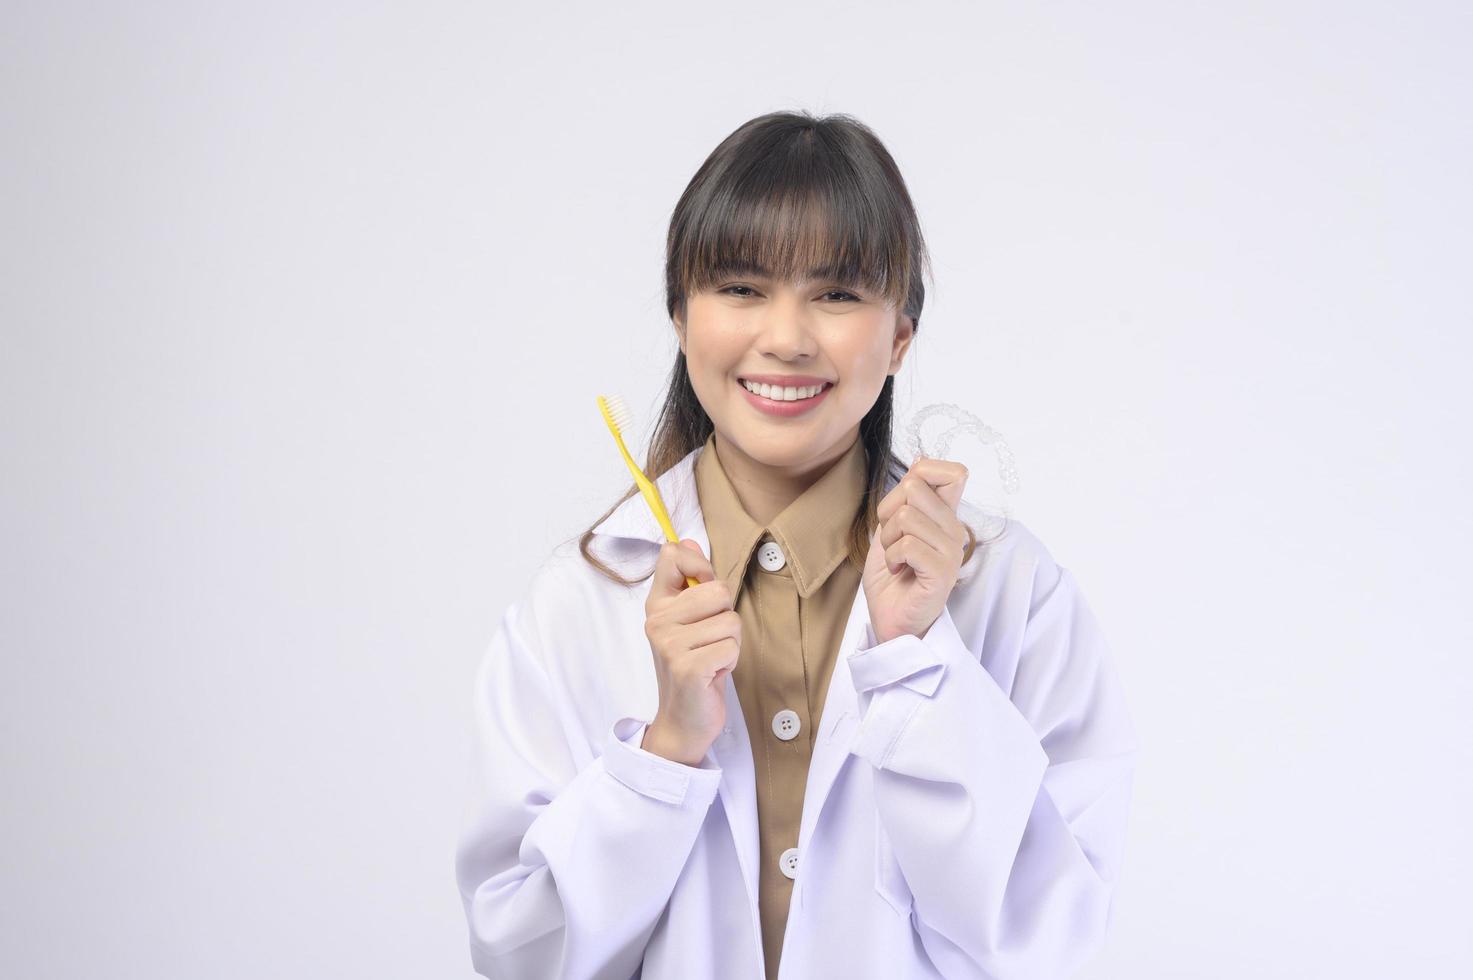 junger weiblicher Zahnarzt, der über weißem Hintergrundstudio lächelt foto